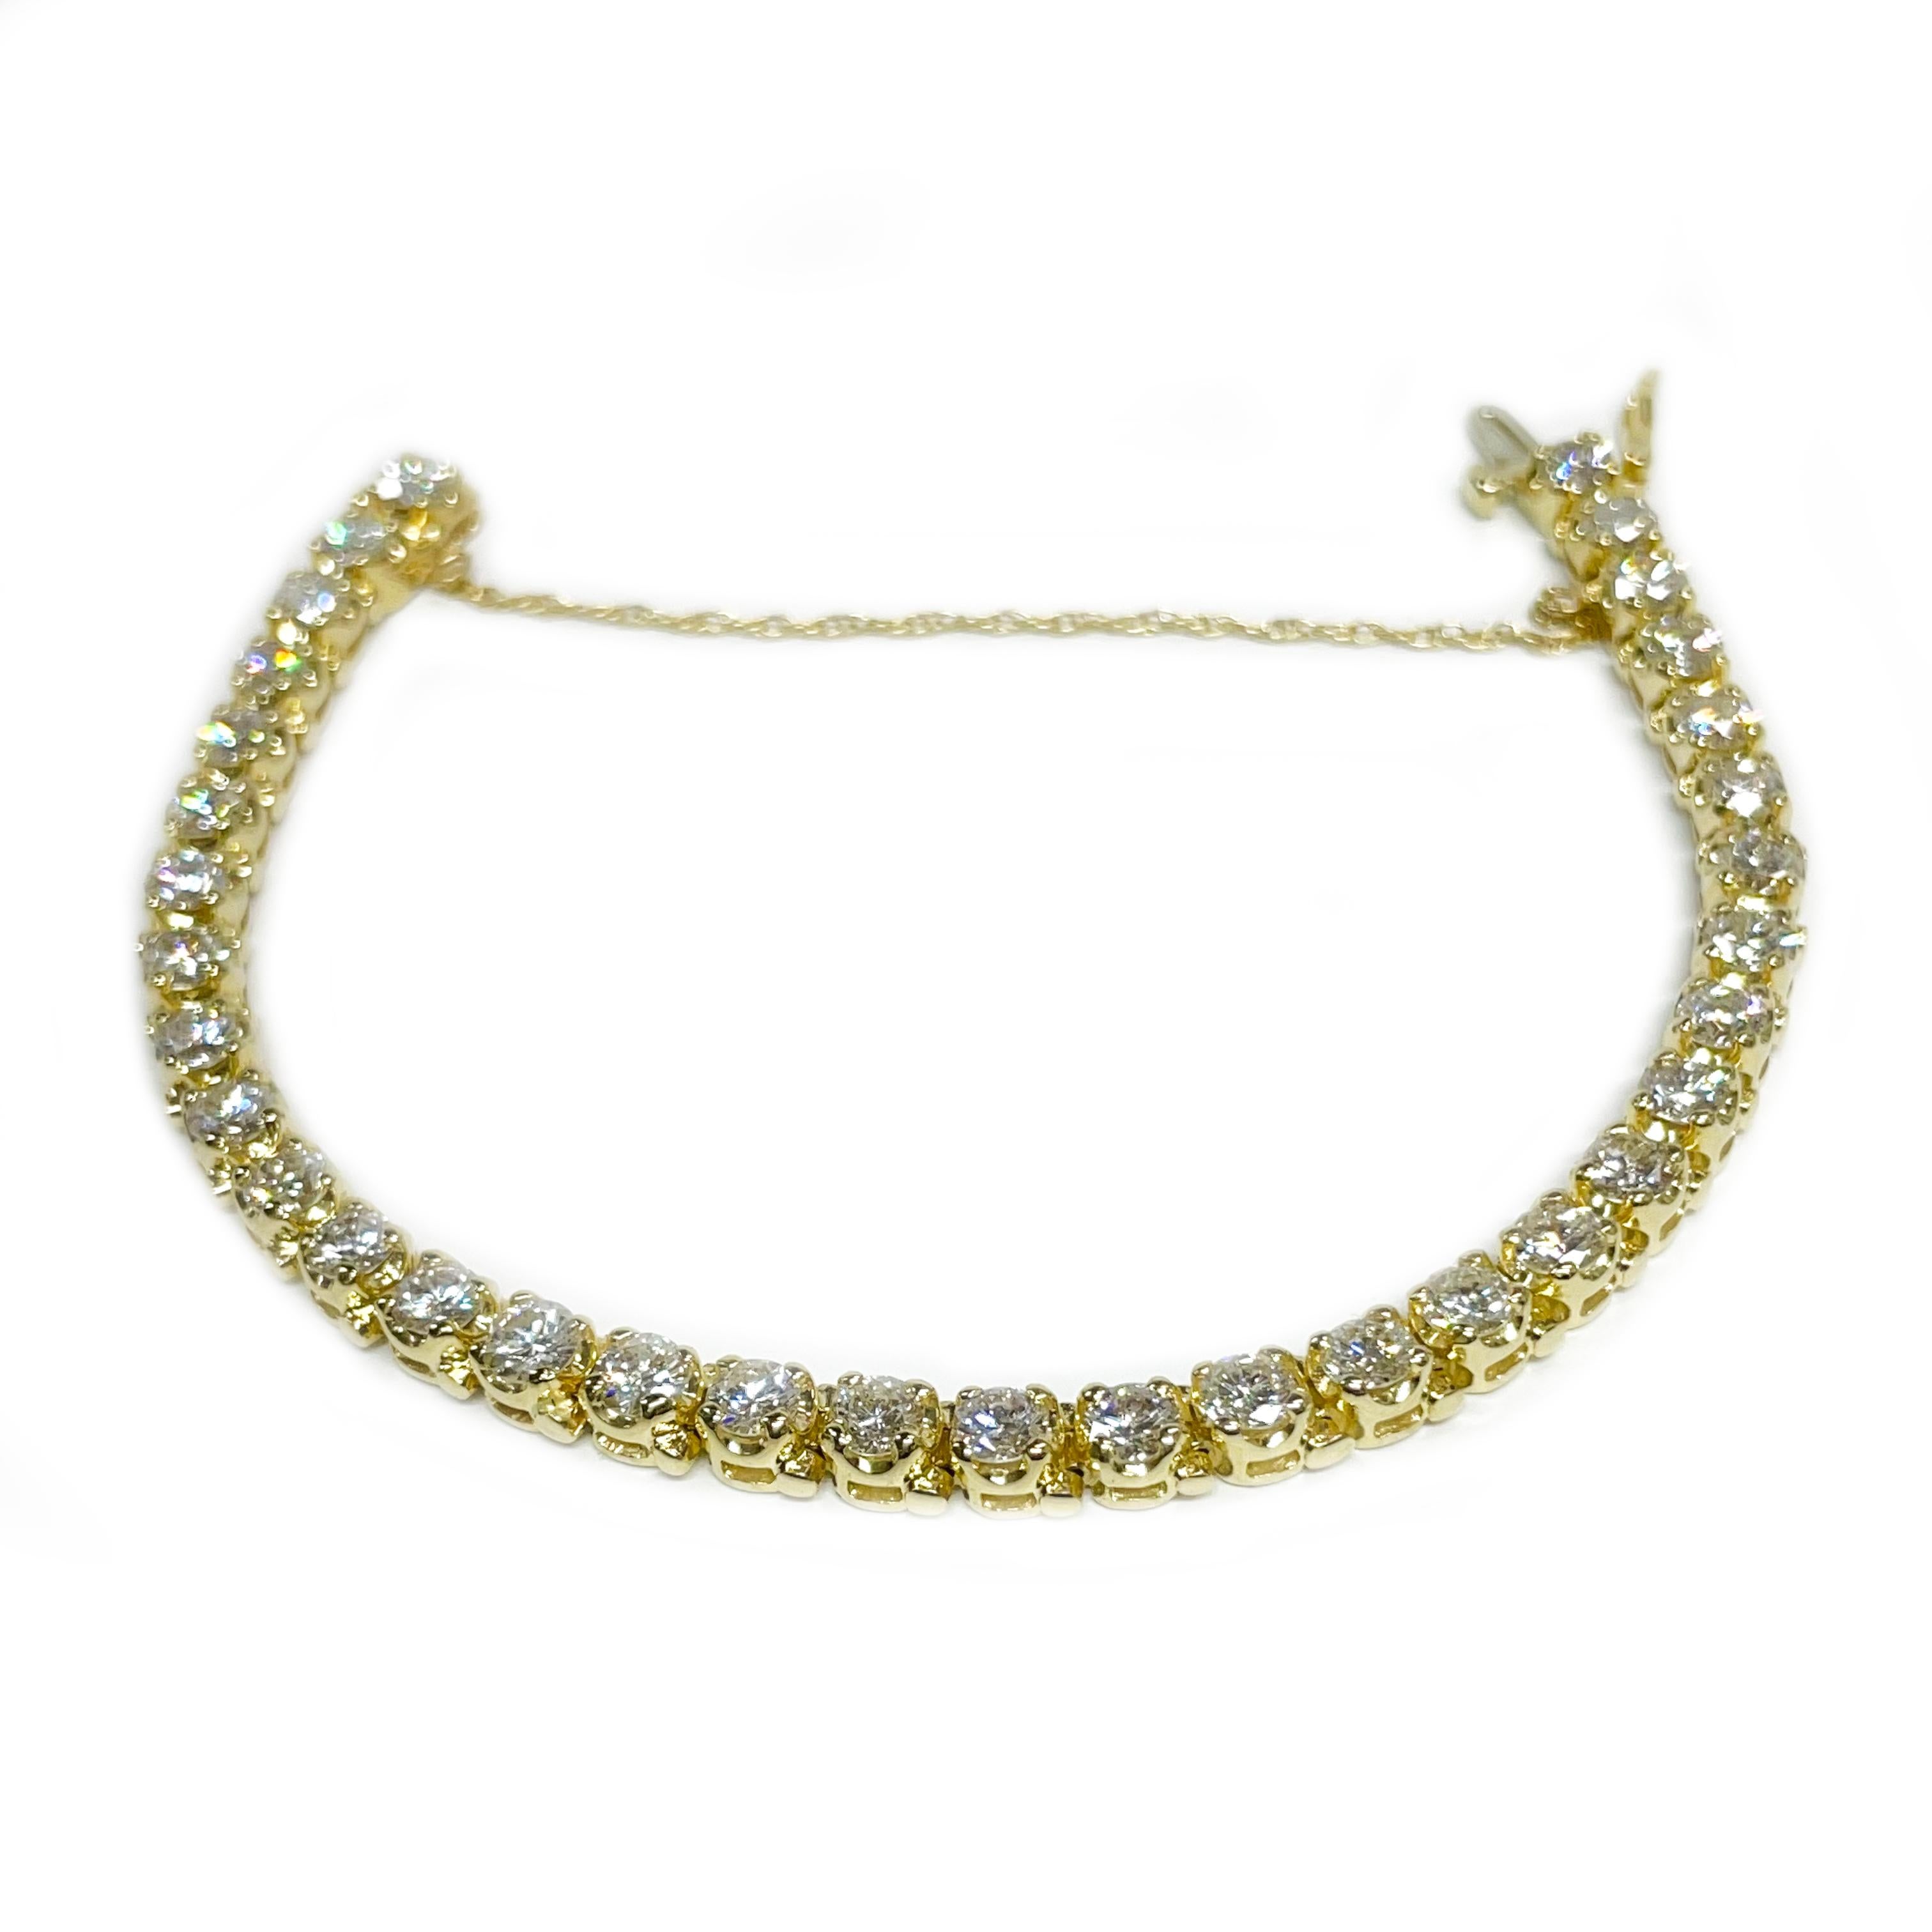 Bracelet de tennis en or jaune 14 carats avec diamants. Ce magnifique bracelet contient trente-quatre diamants ronds allant de 4,0 mm à 4,1 mm pour un poids total en carats de 8,62ctw. Les diamants sont de pureté VS1-VS2 (G.I.A.) et de couleur G-H